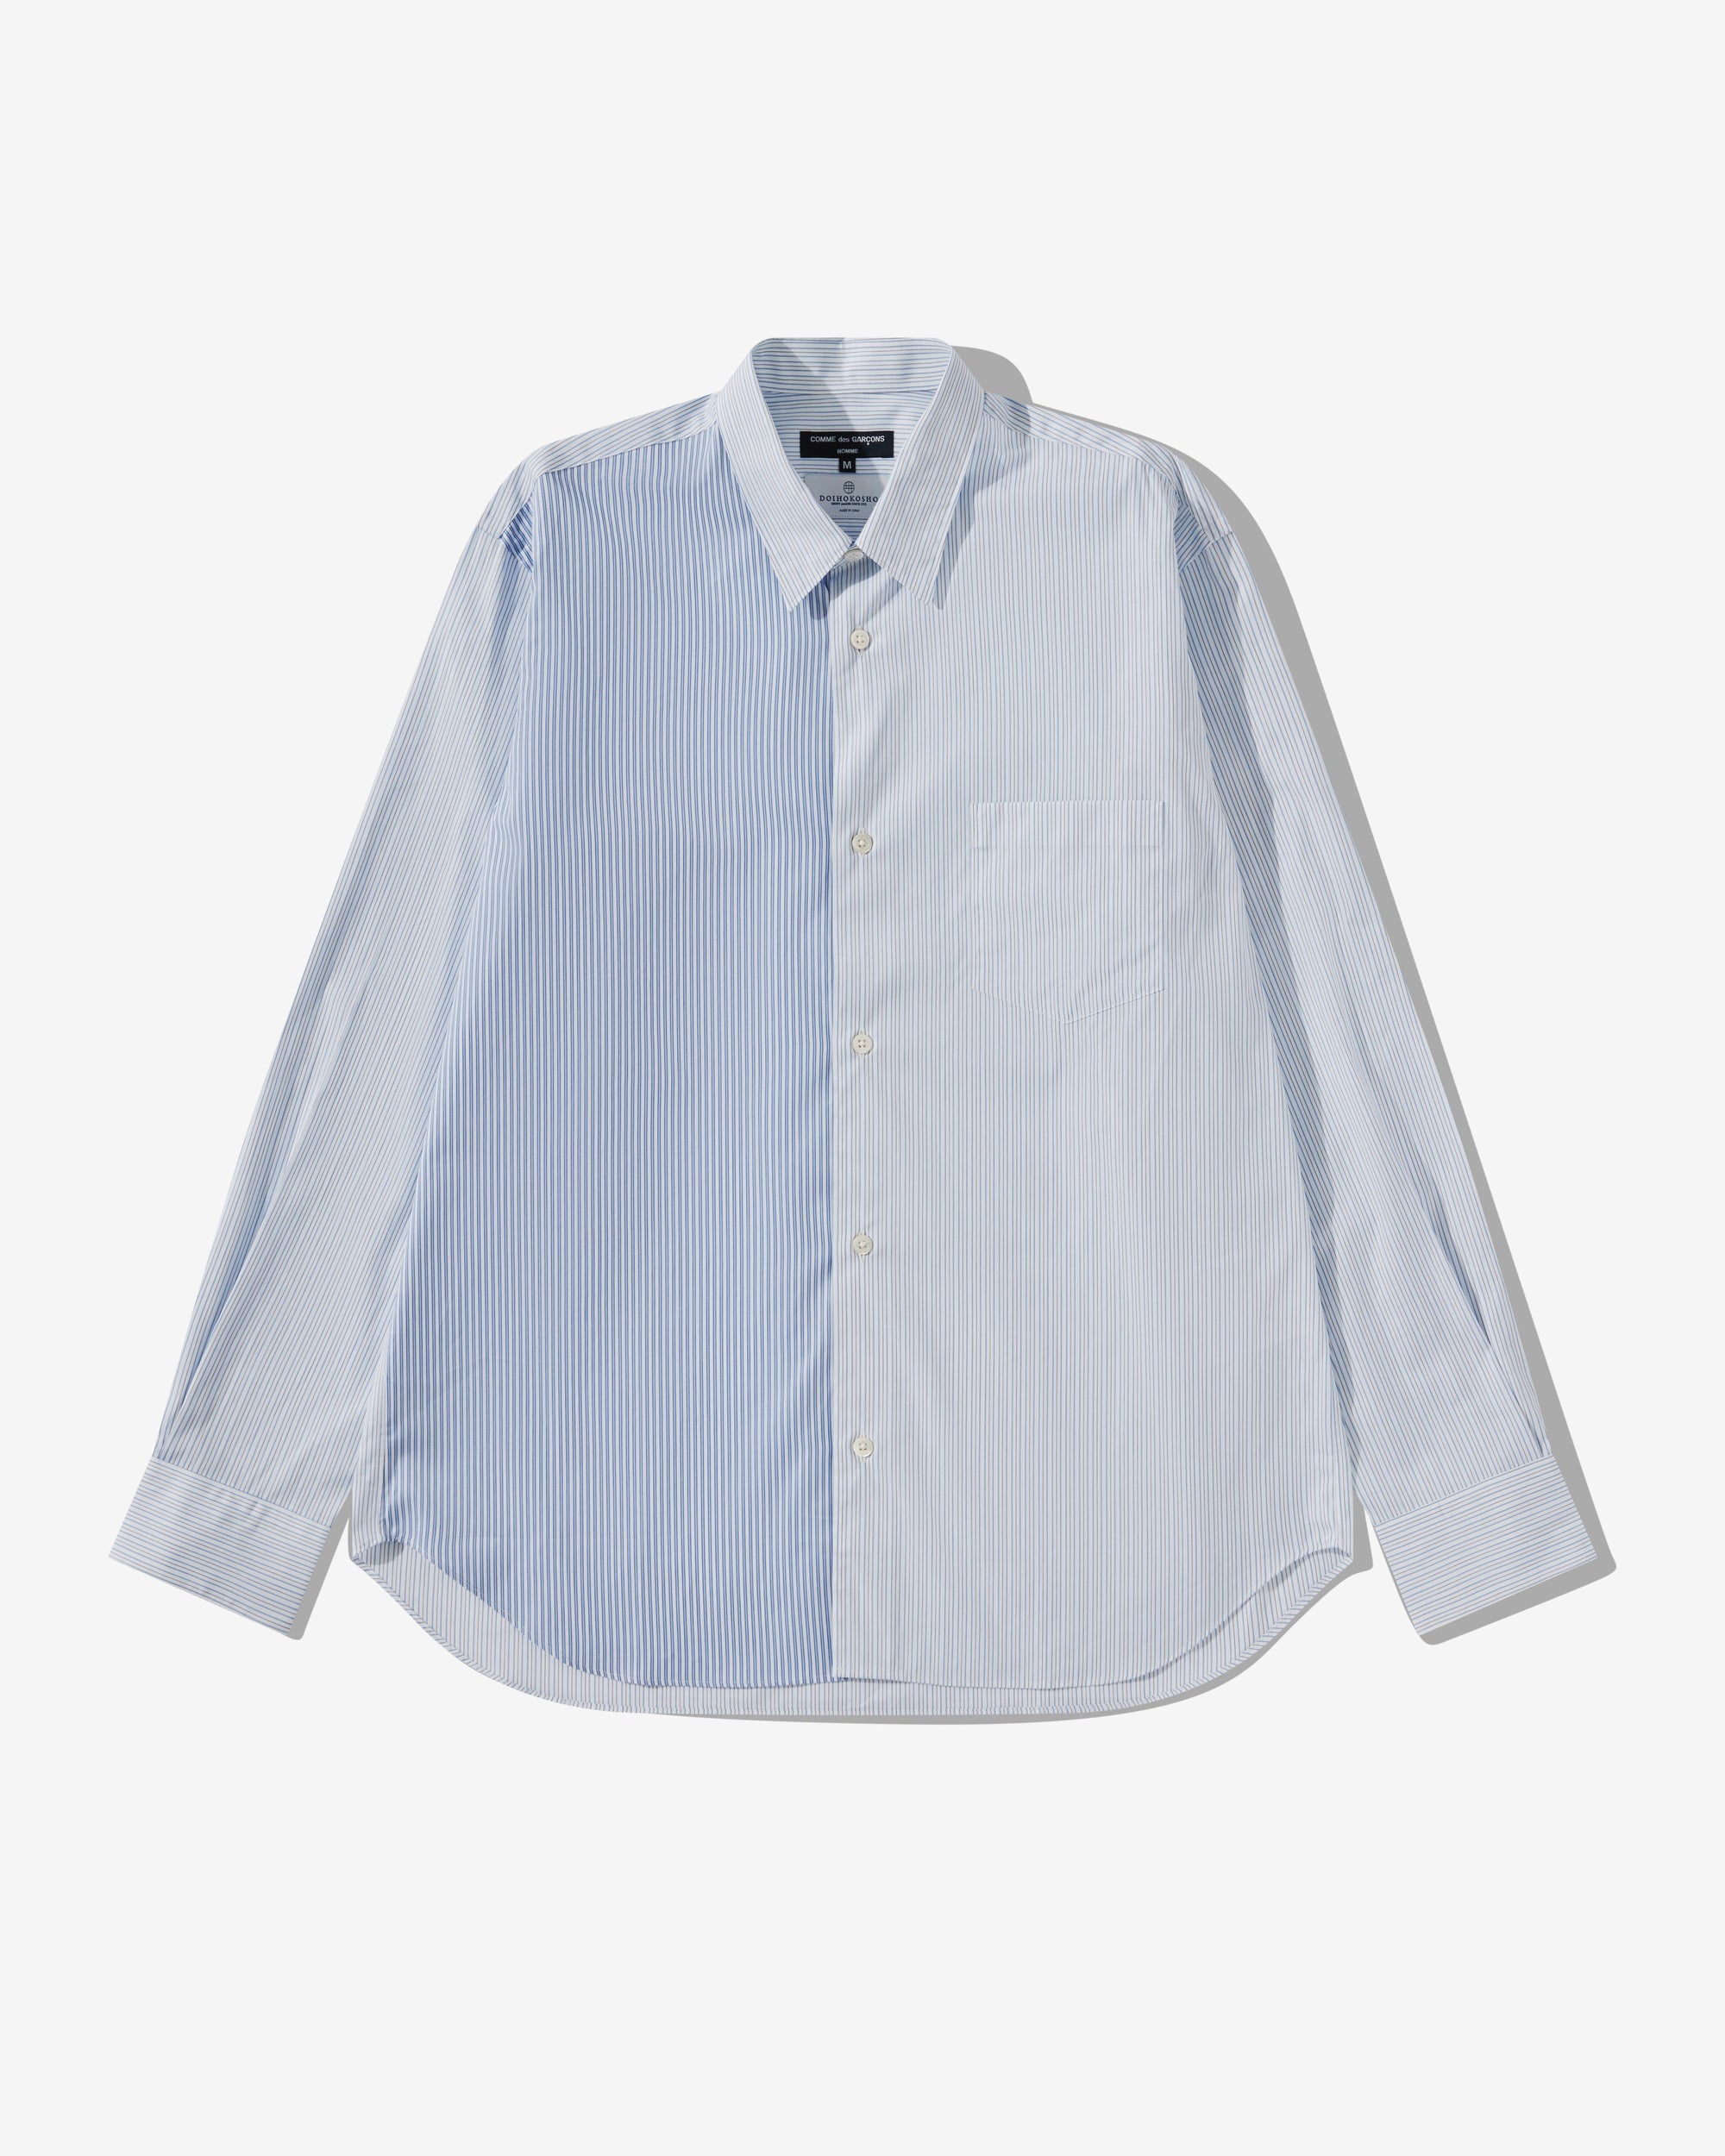 Comme des Garçons Homme - Men's Cotton Stripe Shirt - (White) view 1